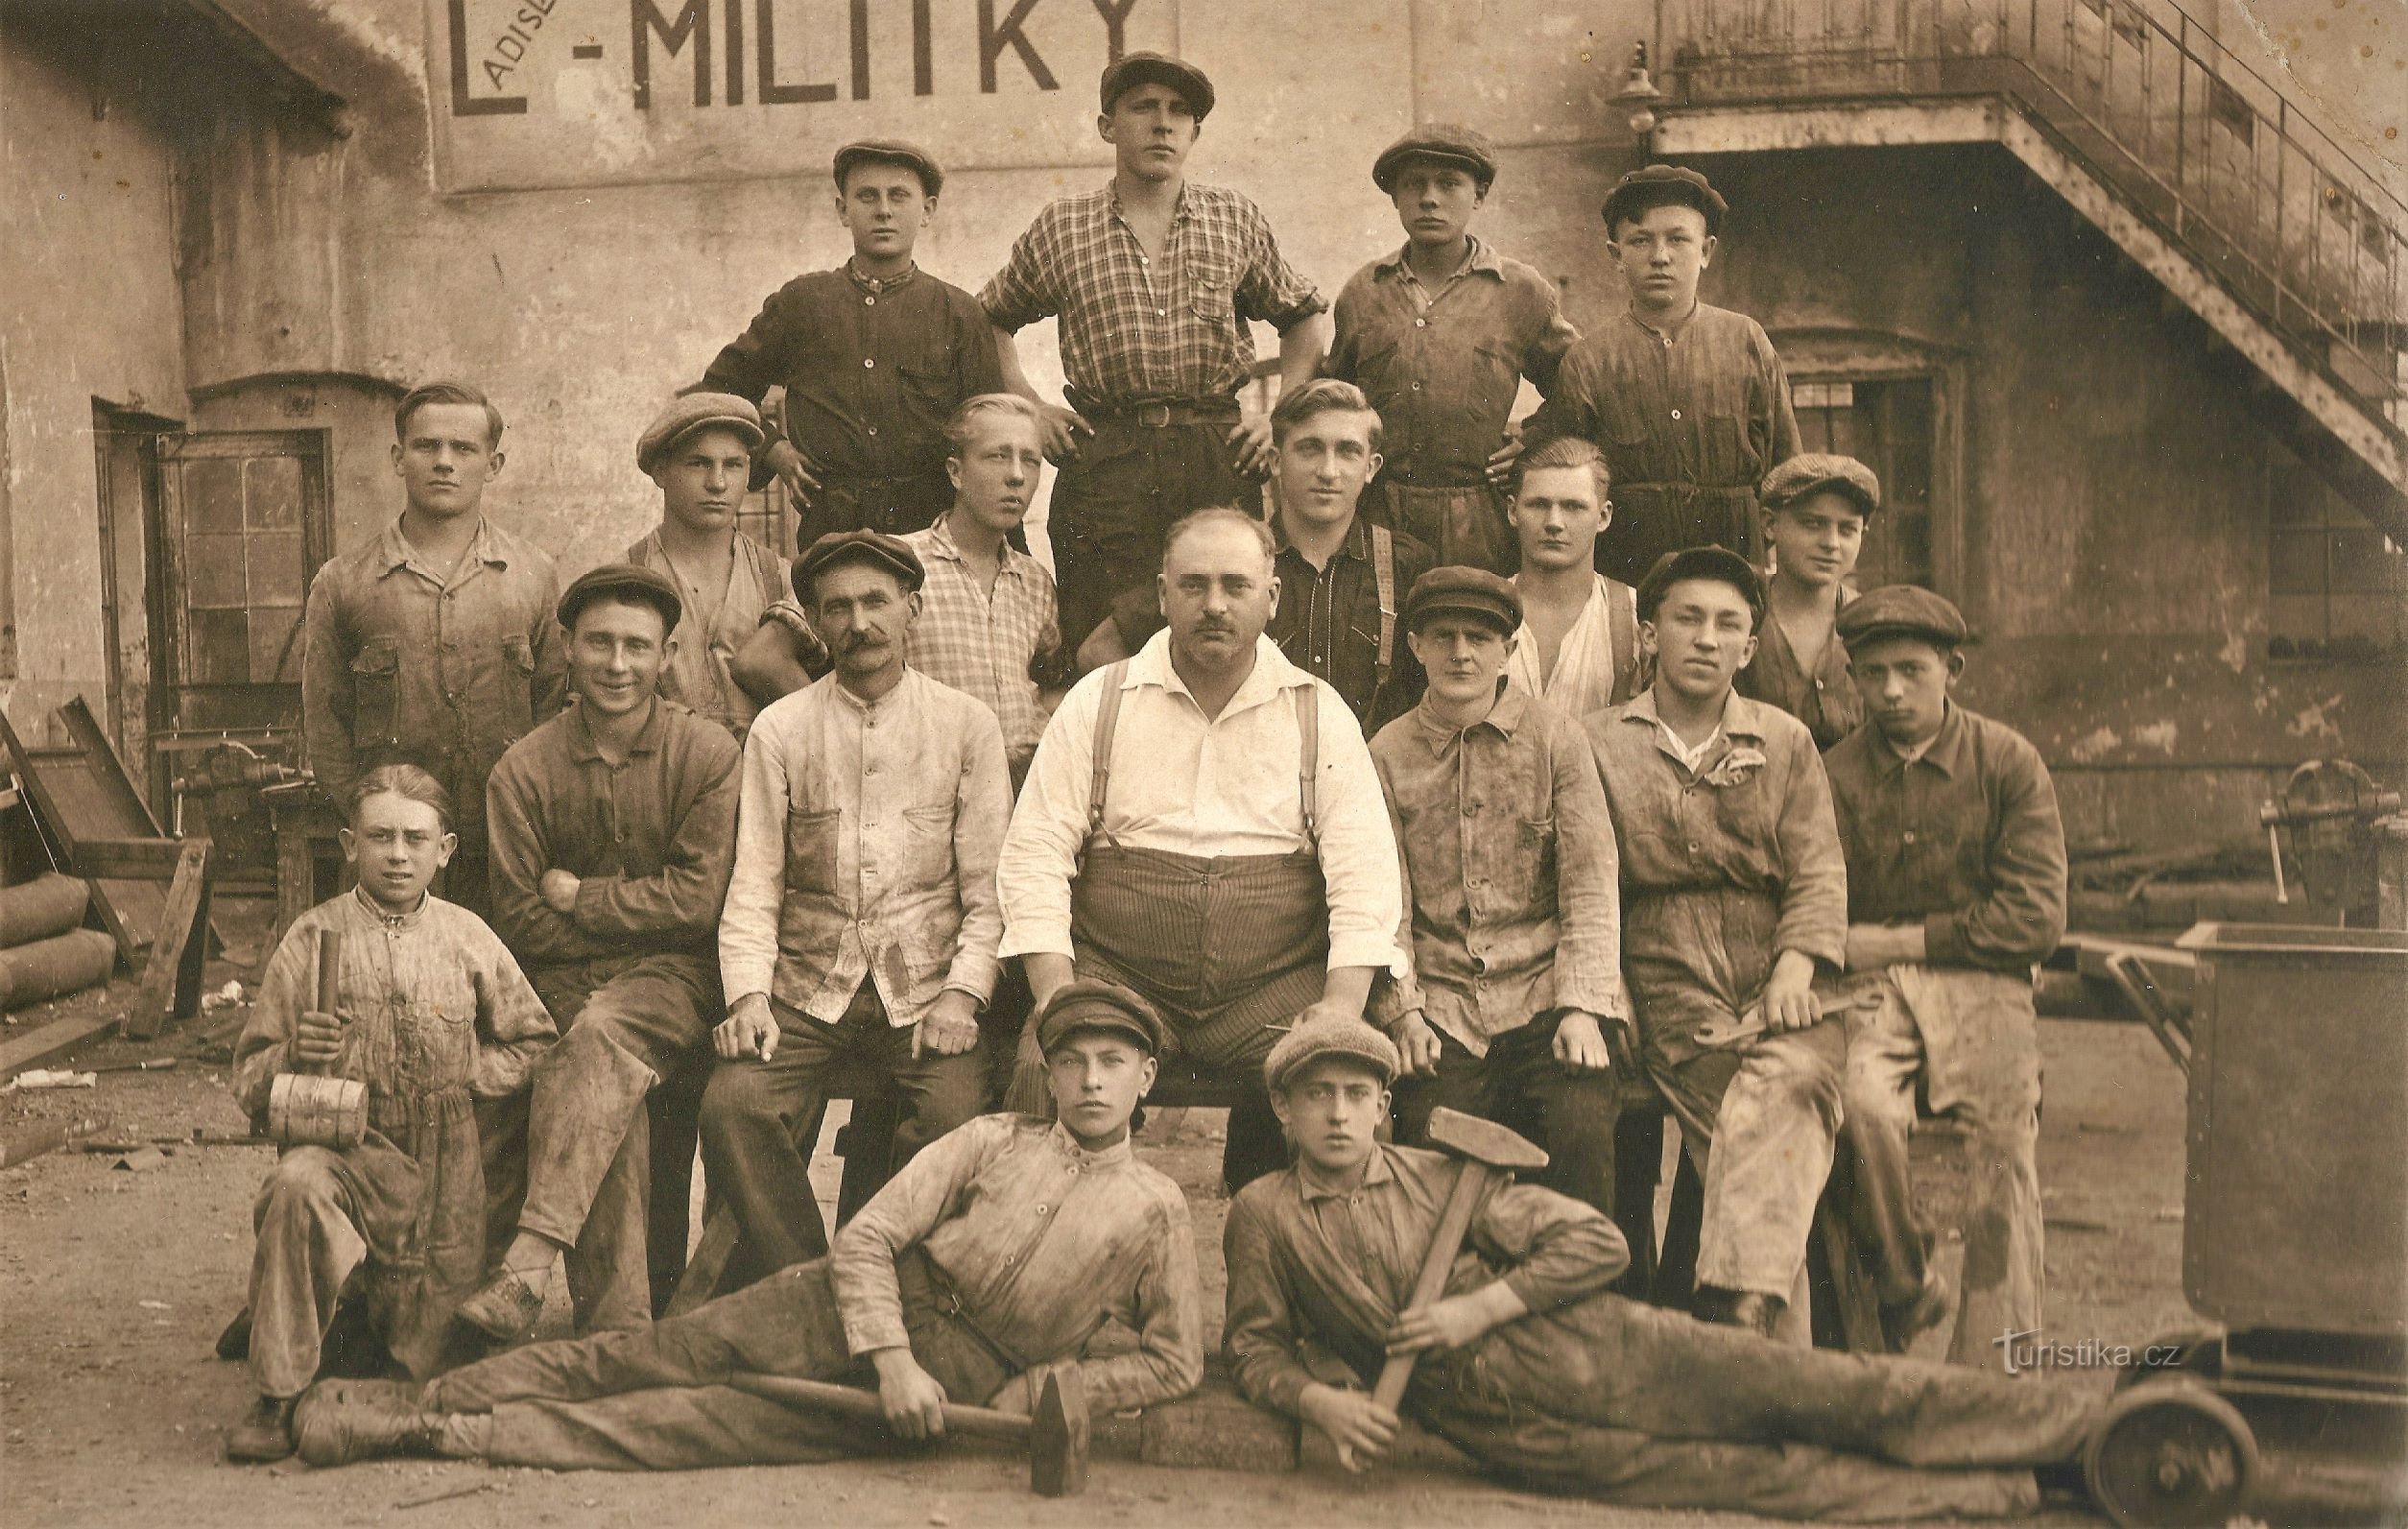 Ladislav Militký cég munkatársai az 30-as évek elejétől